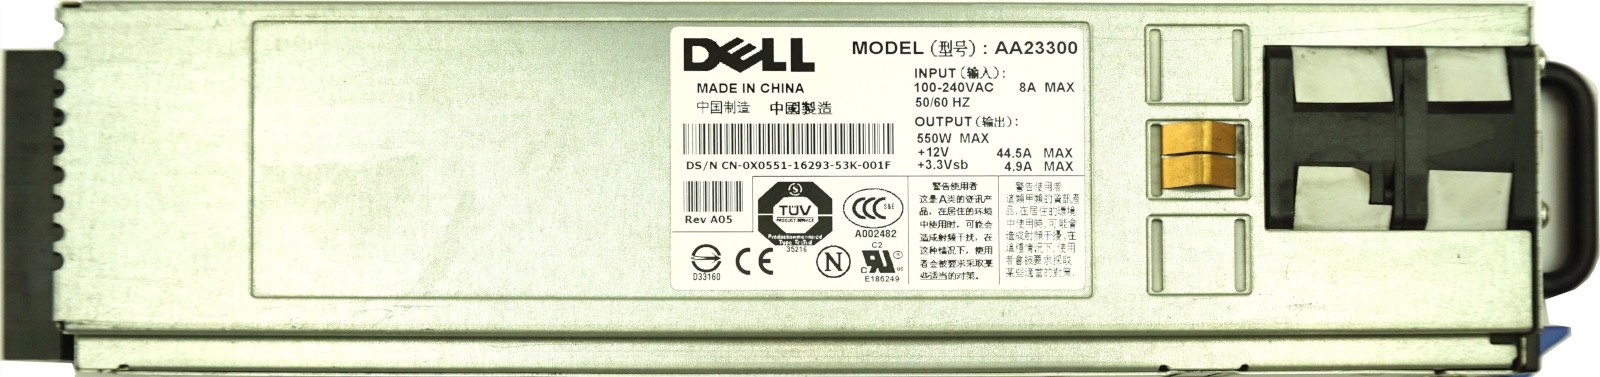 Dell 1850 HS PSU 550W